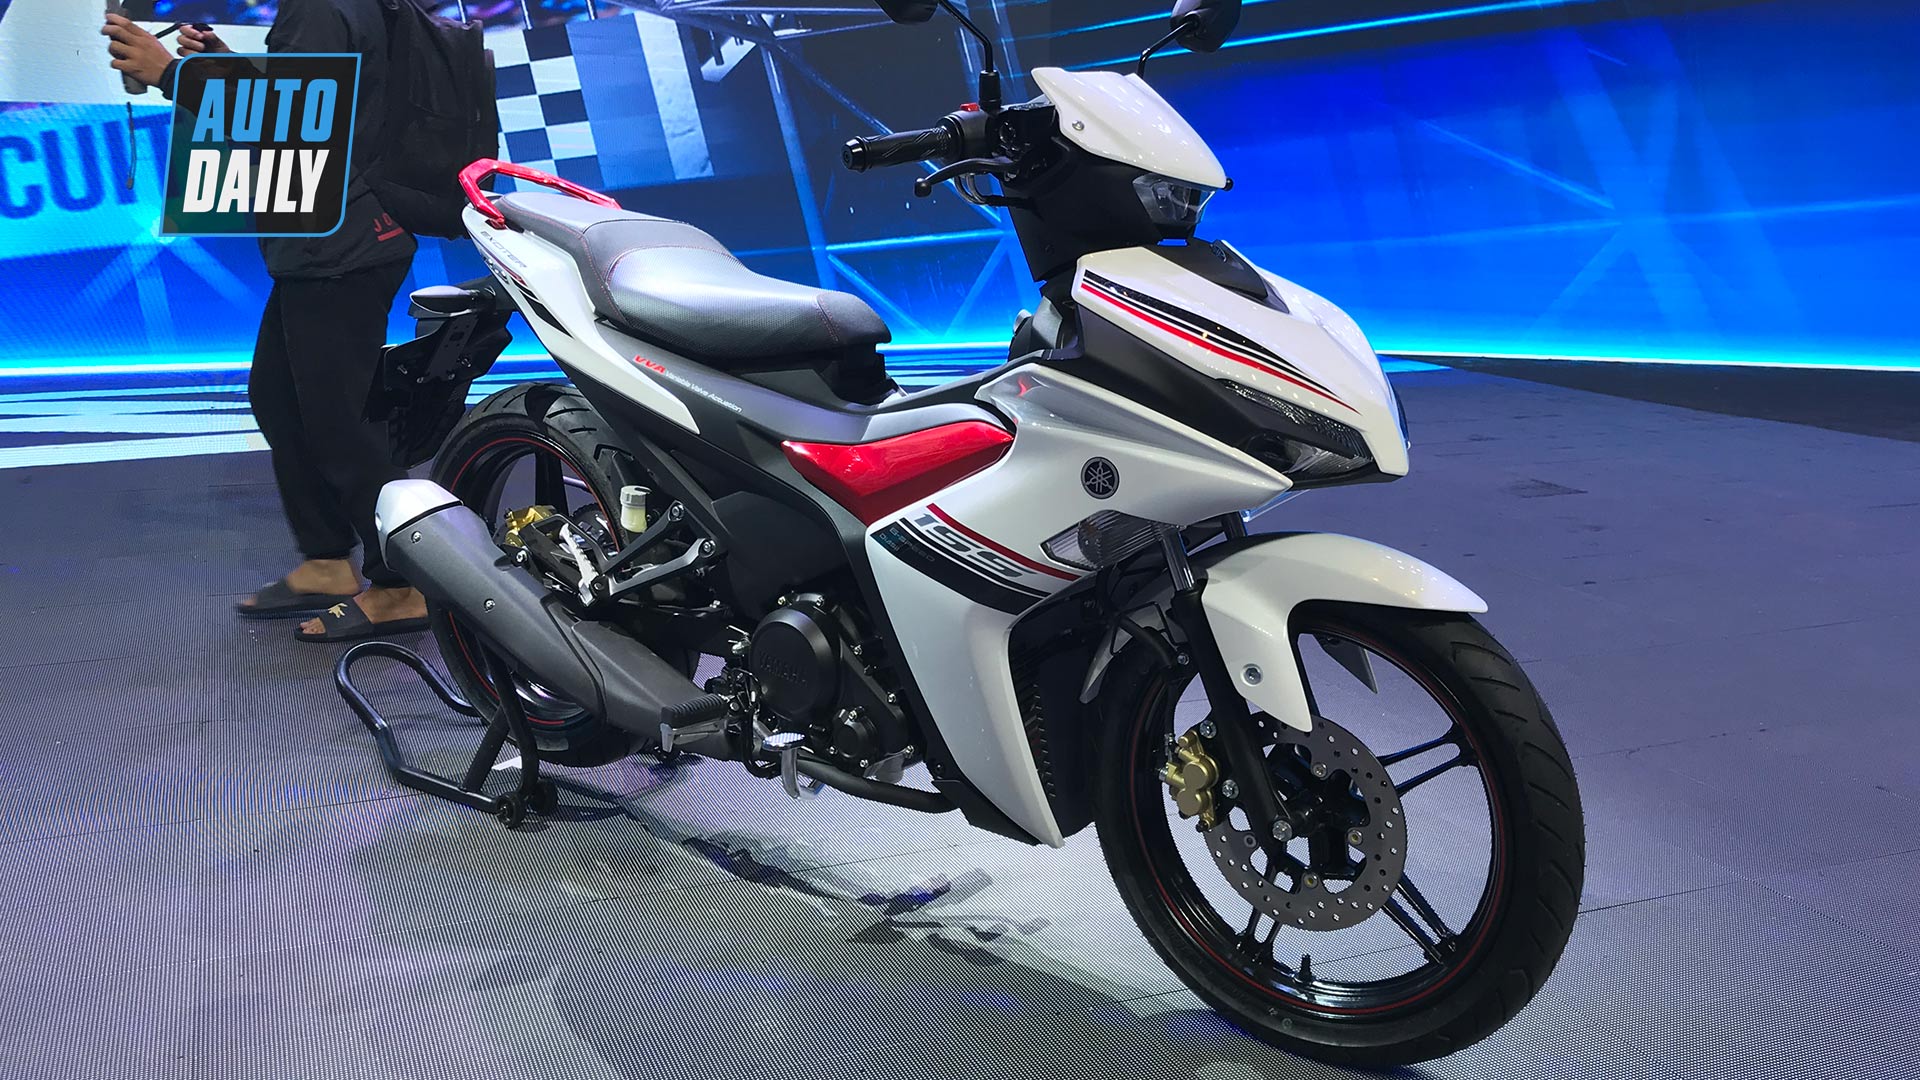 Yamaha Exciter 155 chính thức ra mắt tại Việt Nam, giá từ 47 triệu đồng